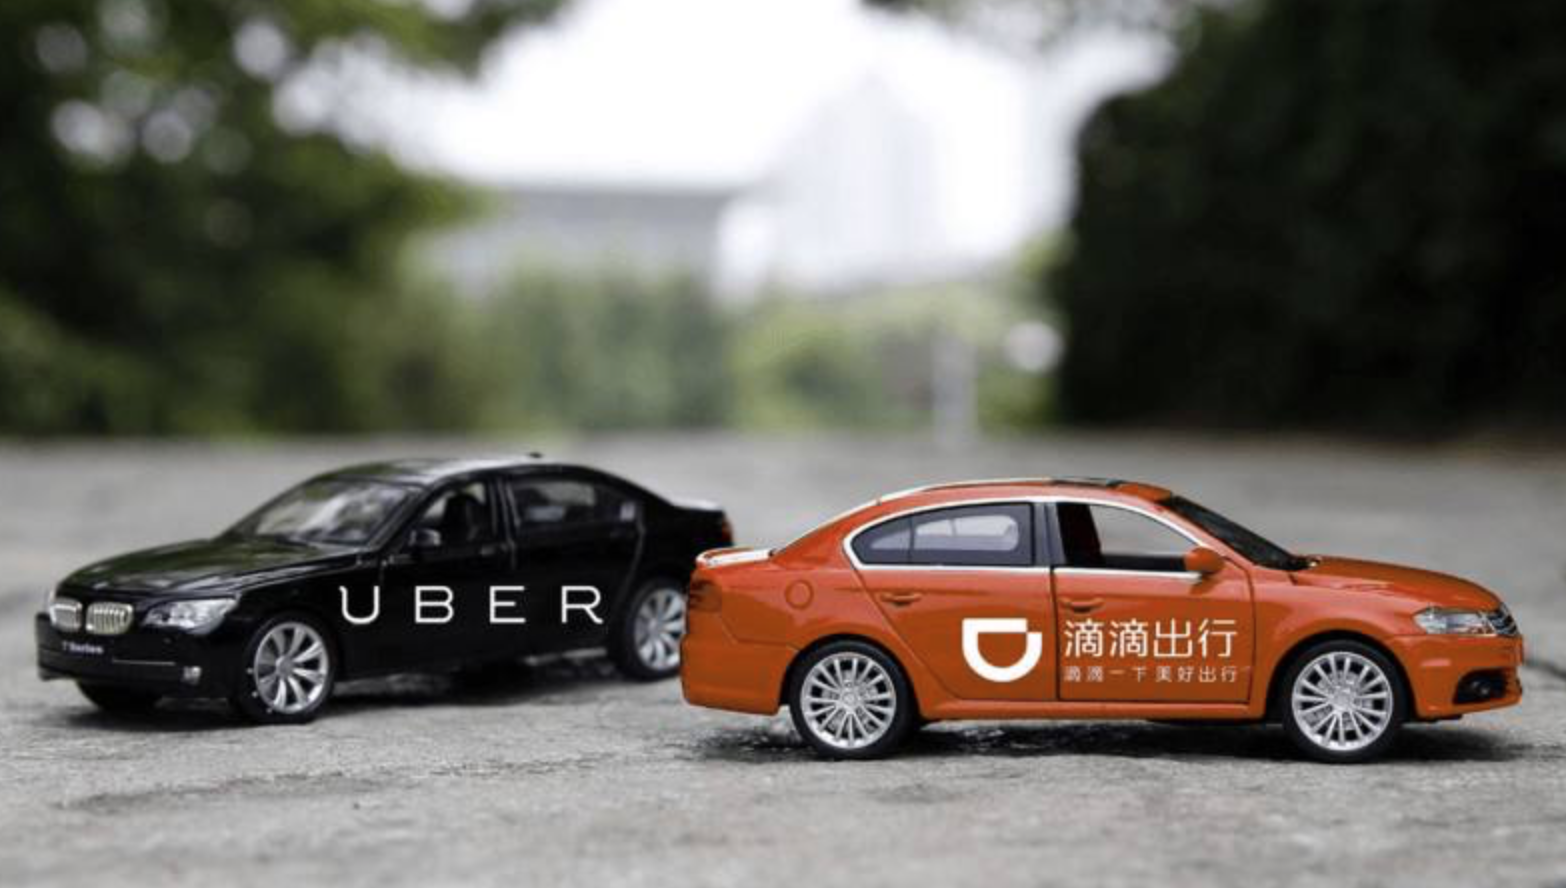 滴滴、Uber改变了全球出行 却仍对抗交通难题